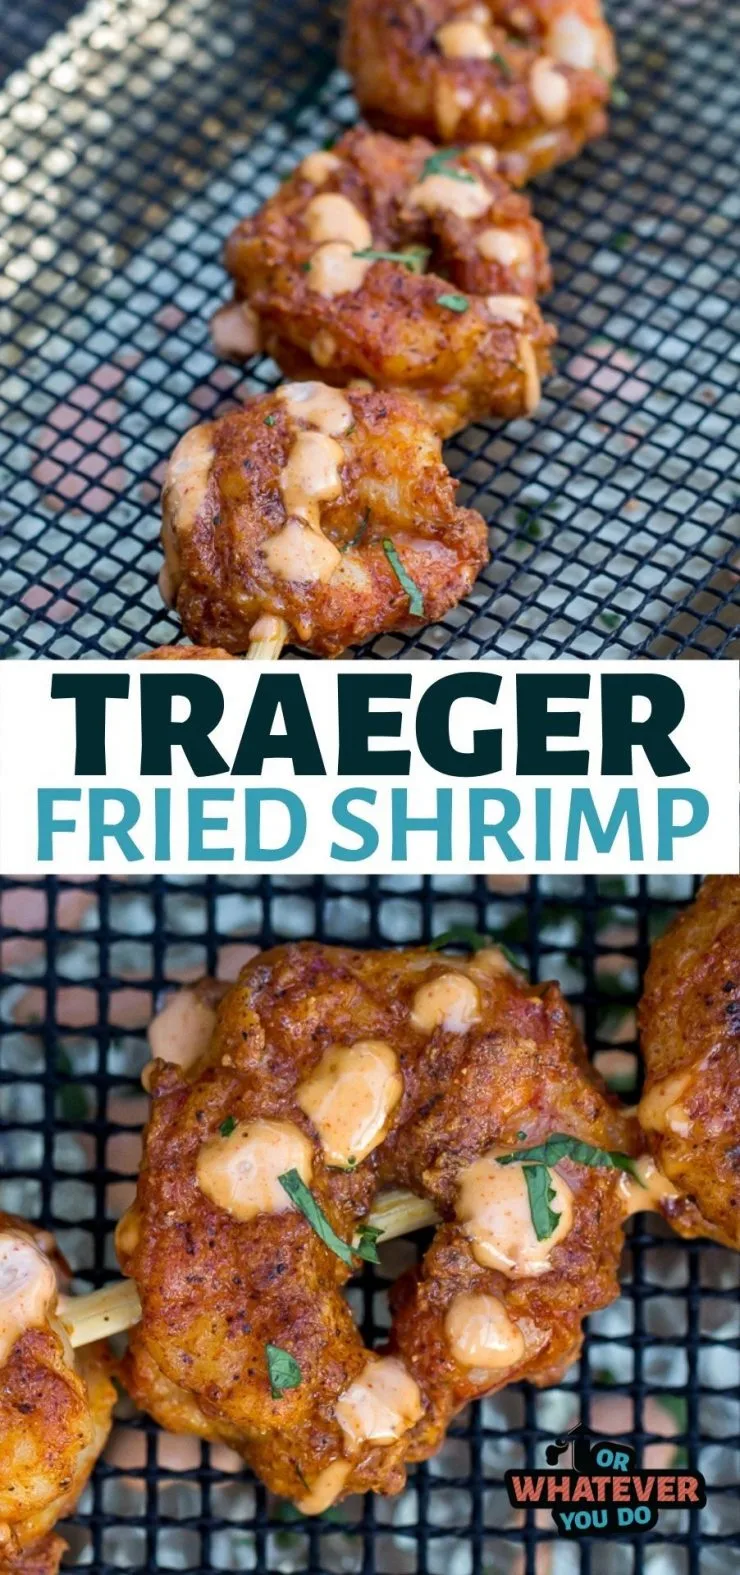 Traeger Fried Shrimp